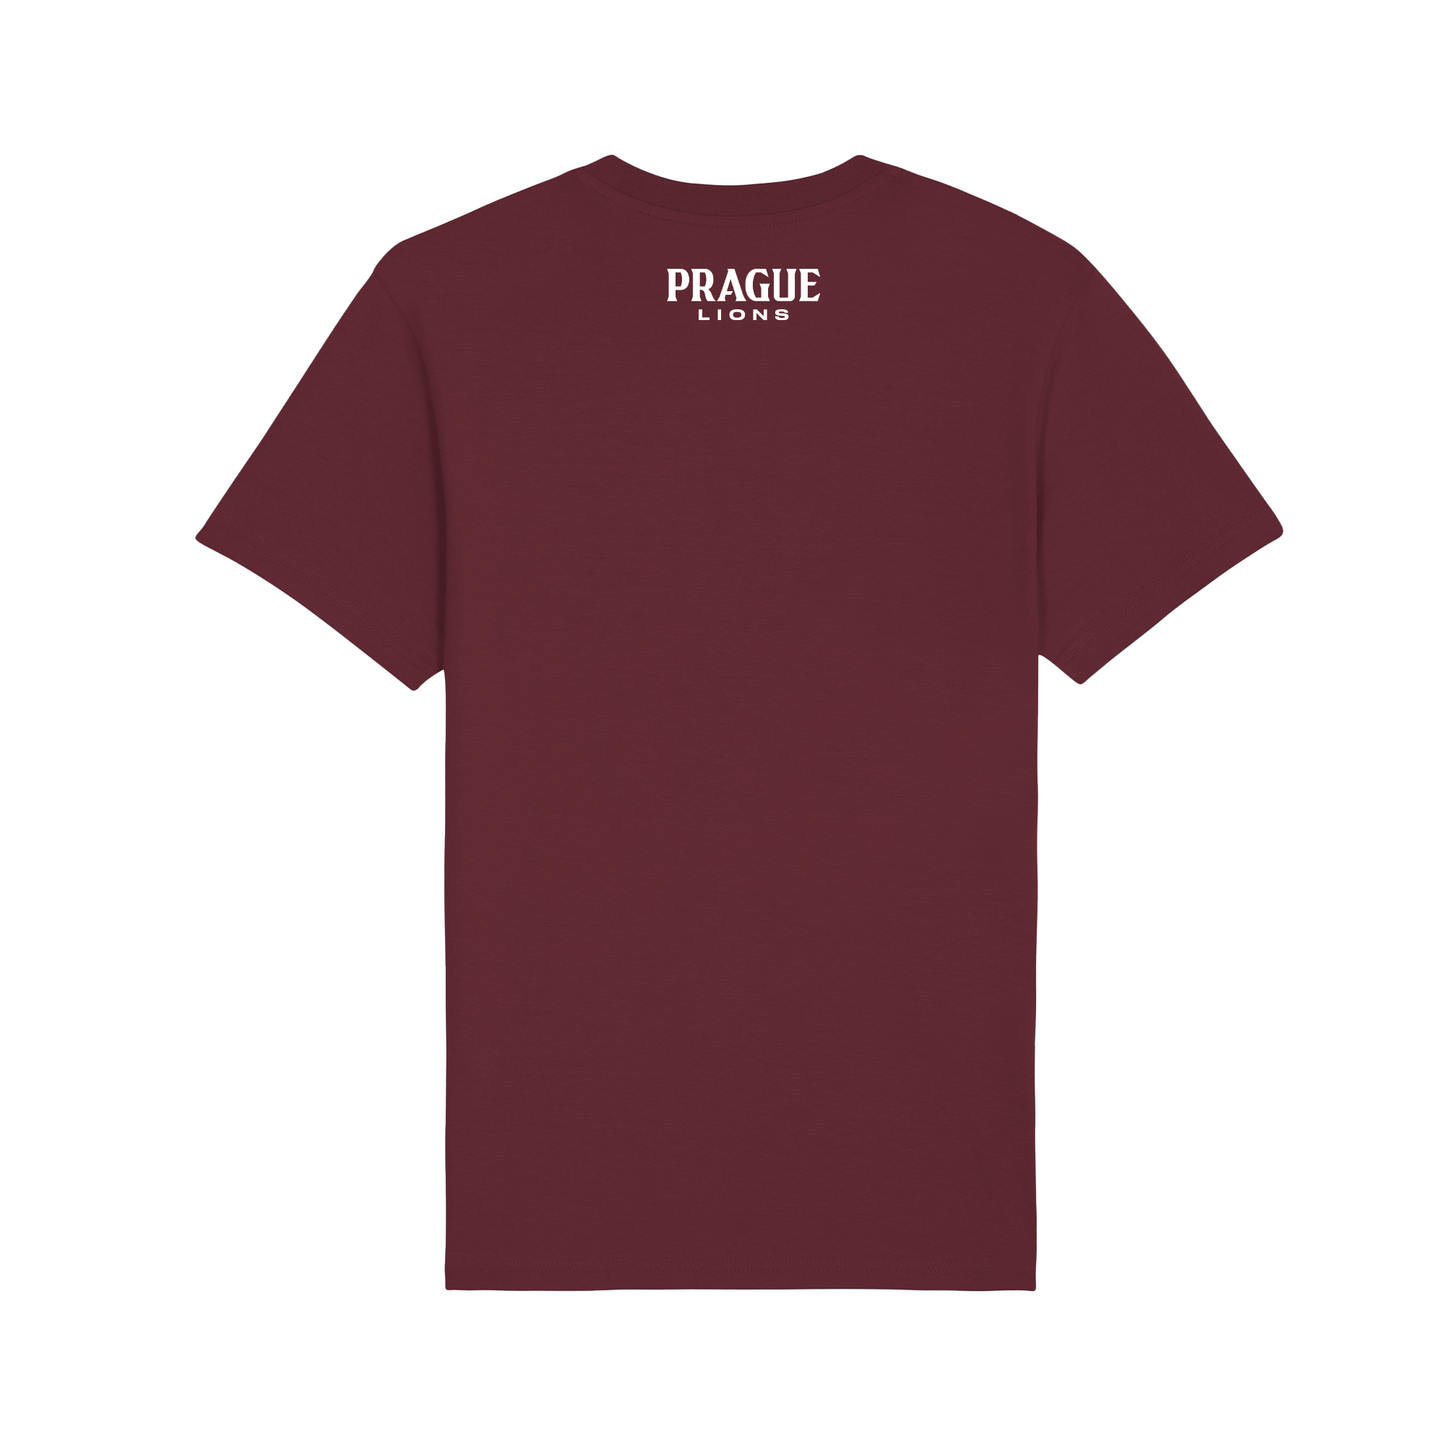 Lions T-Shirt - Burgundy